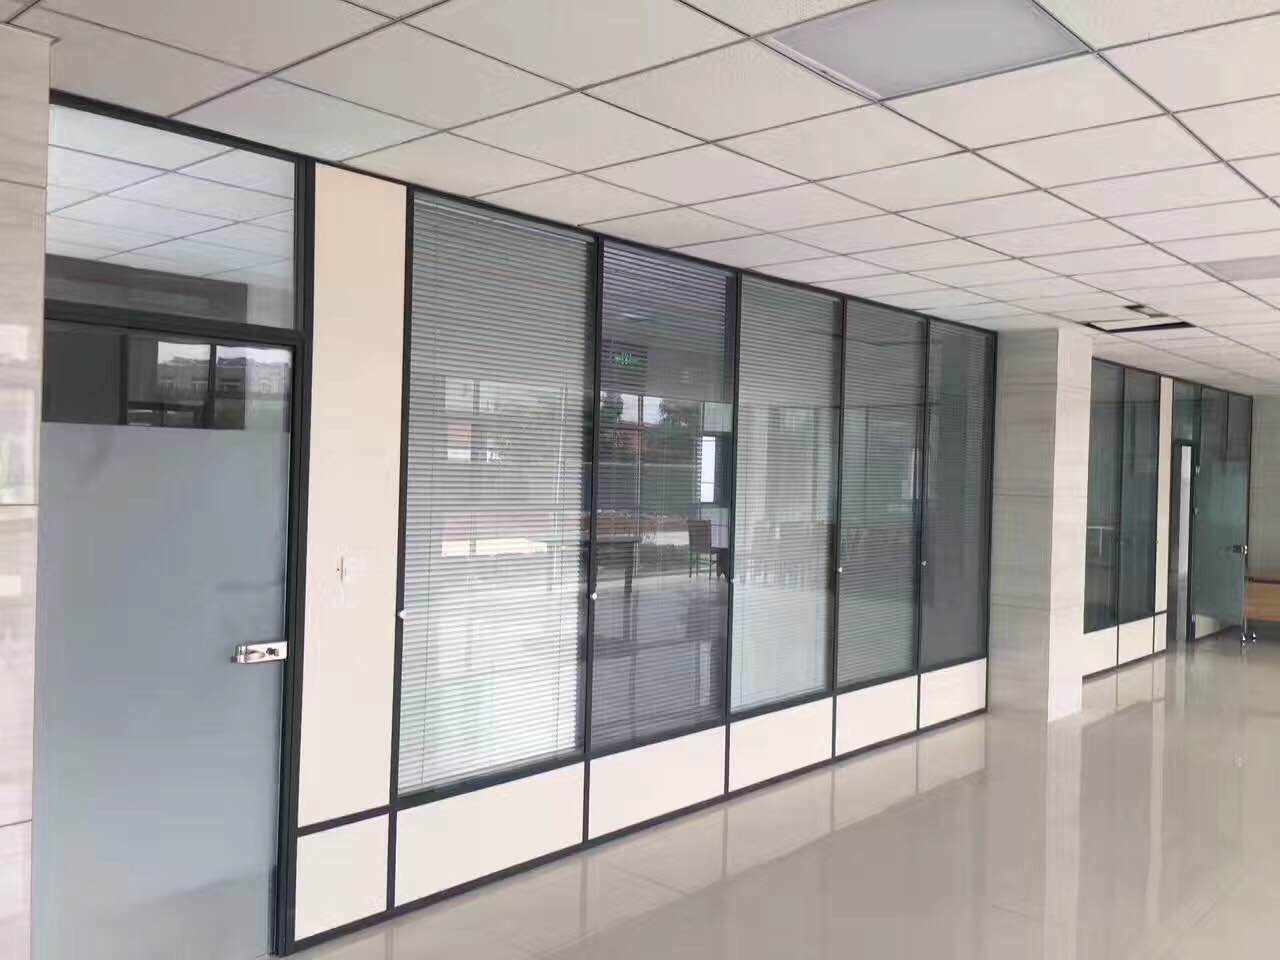 汉中单层玻璃隔断墙定制施工|高品质厂家定制